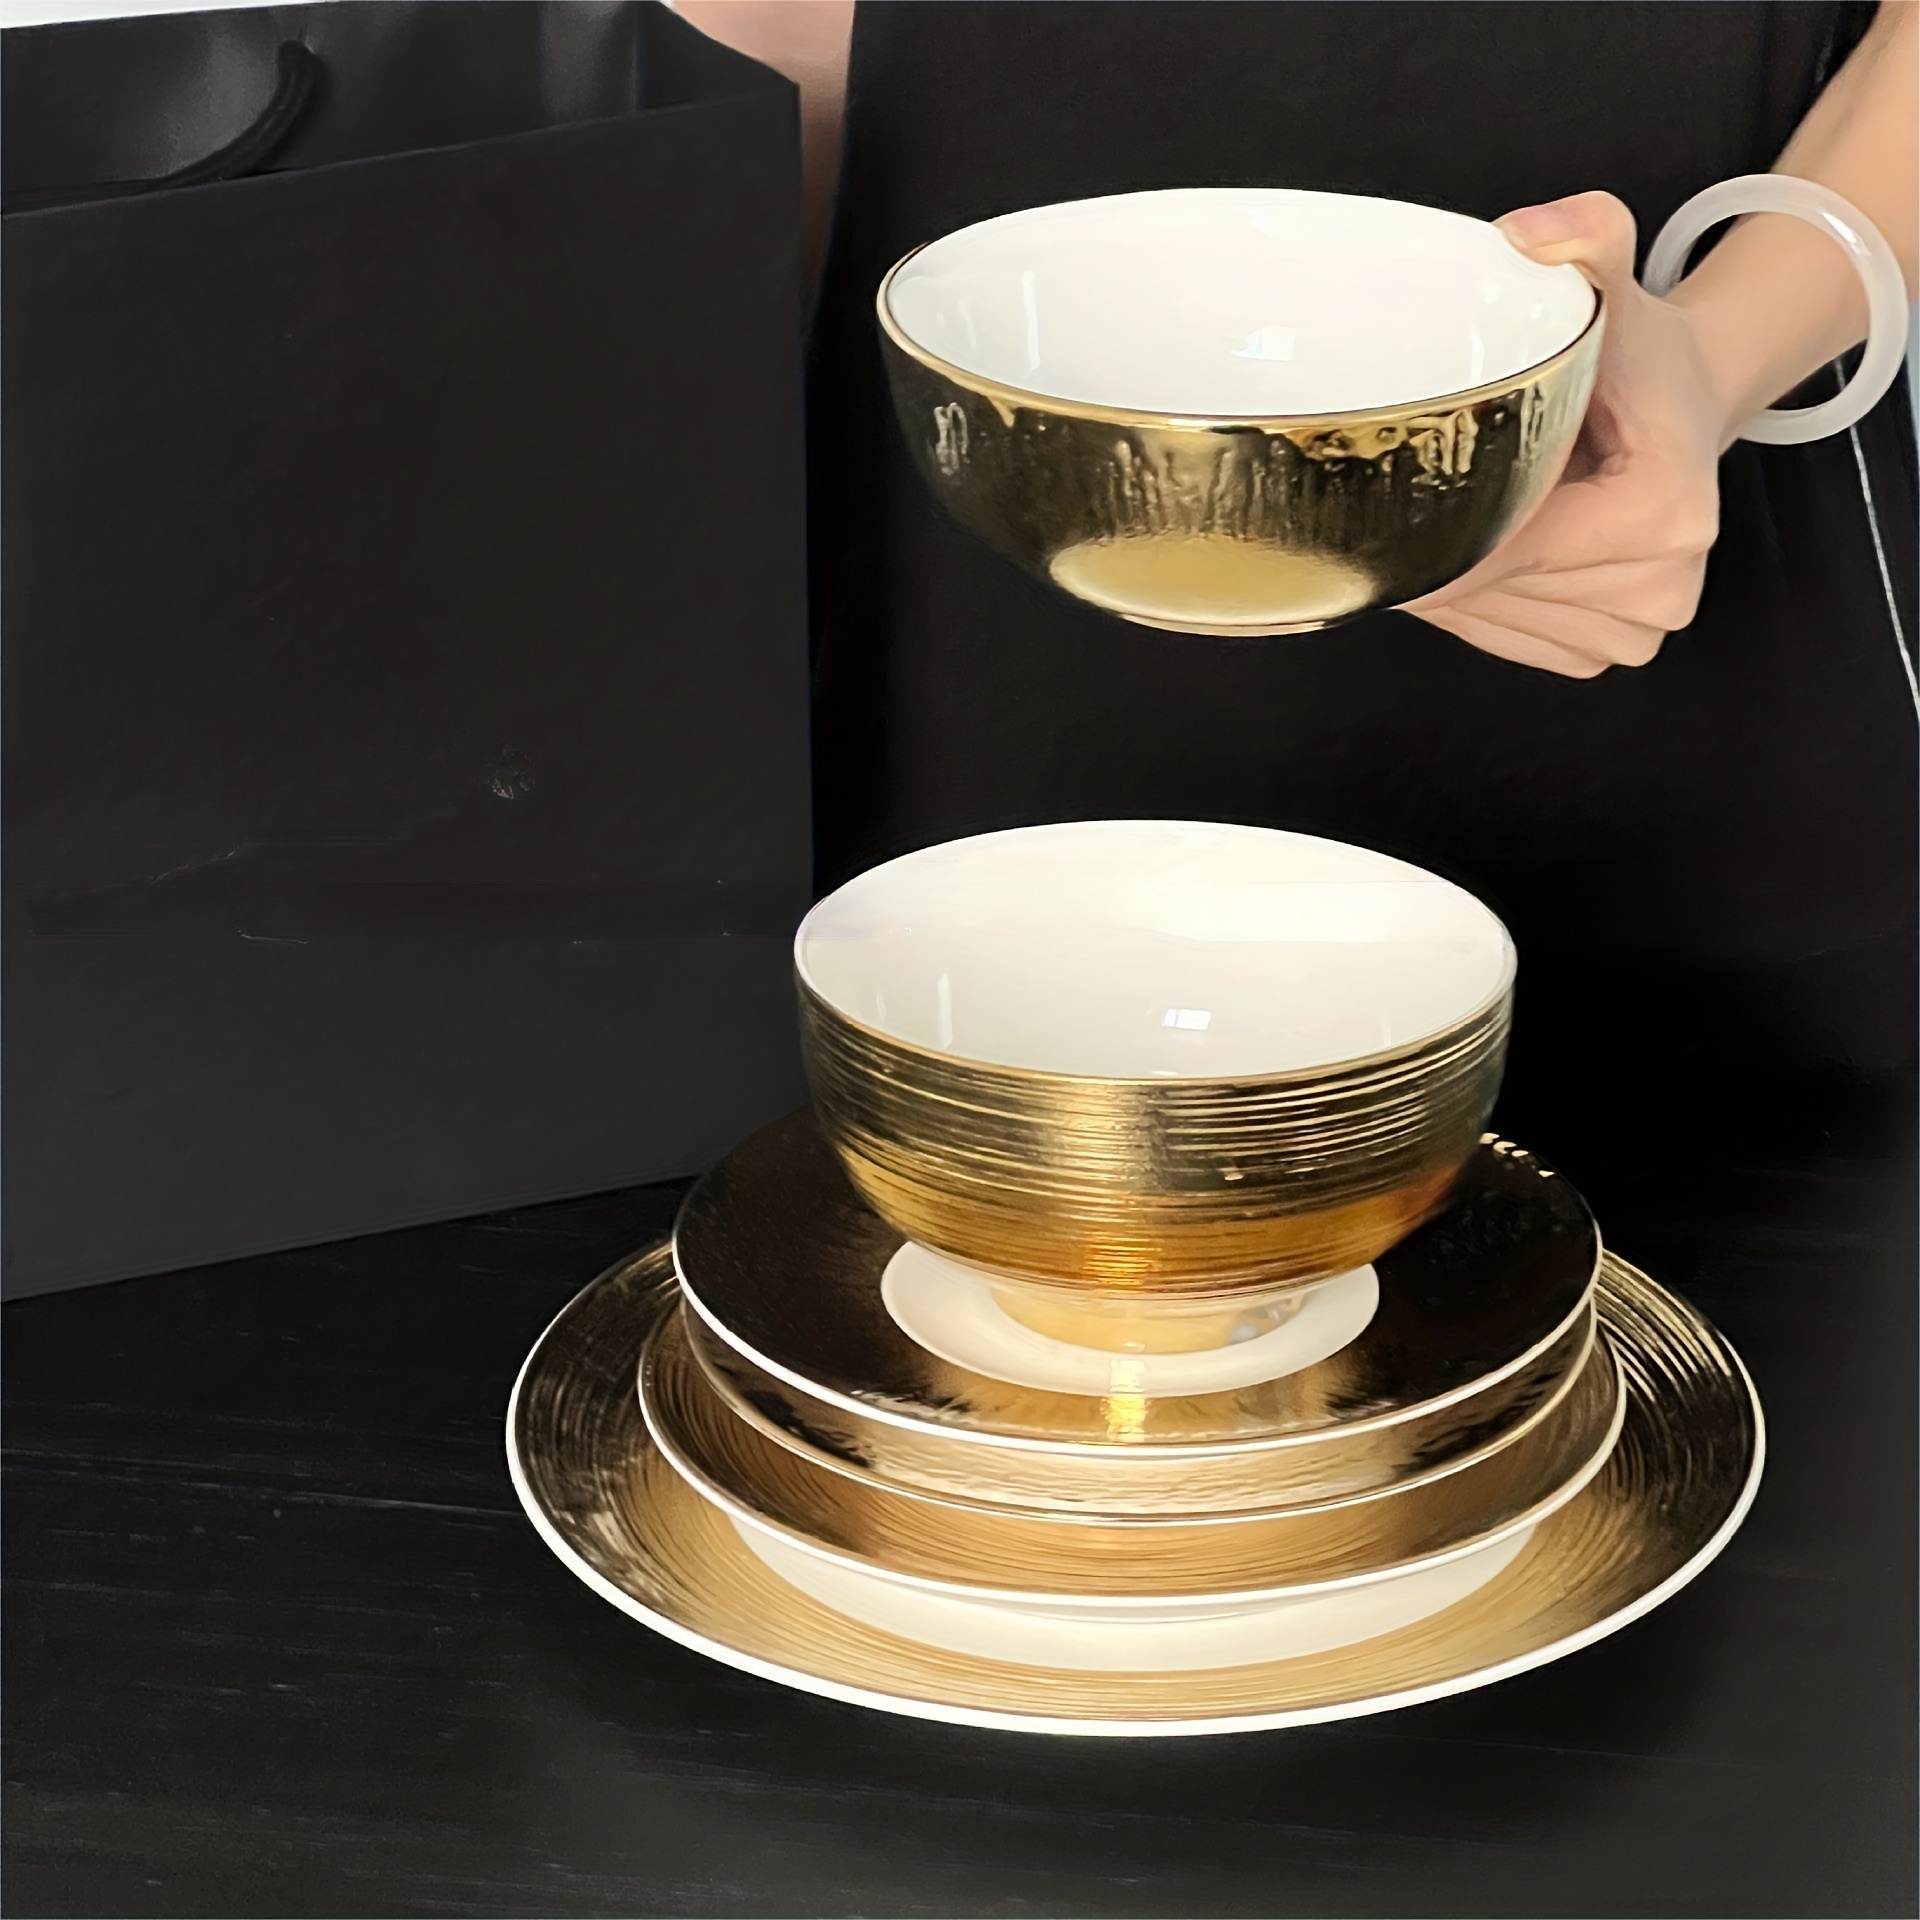 Juego de vajilla de cerámica con borde dorado, plato plano para